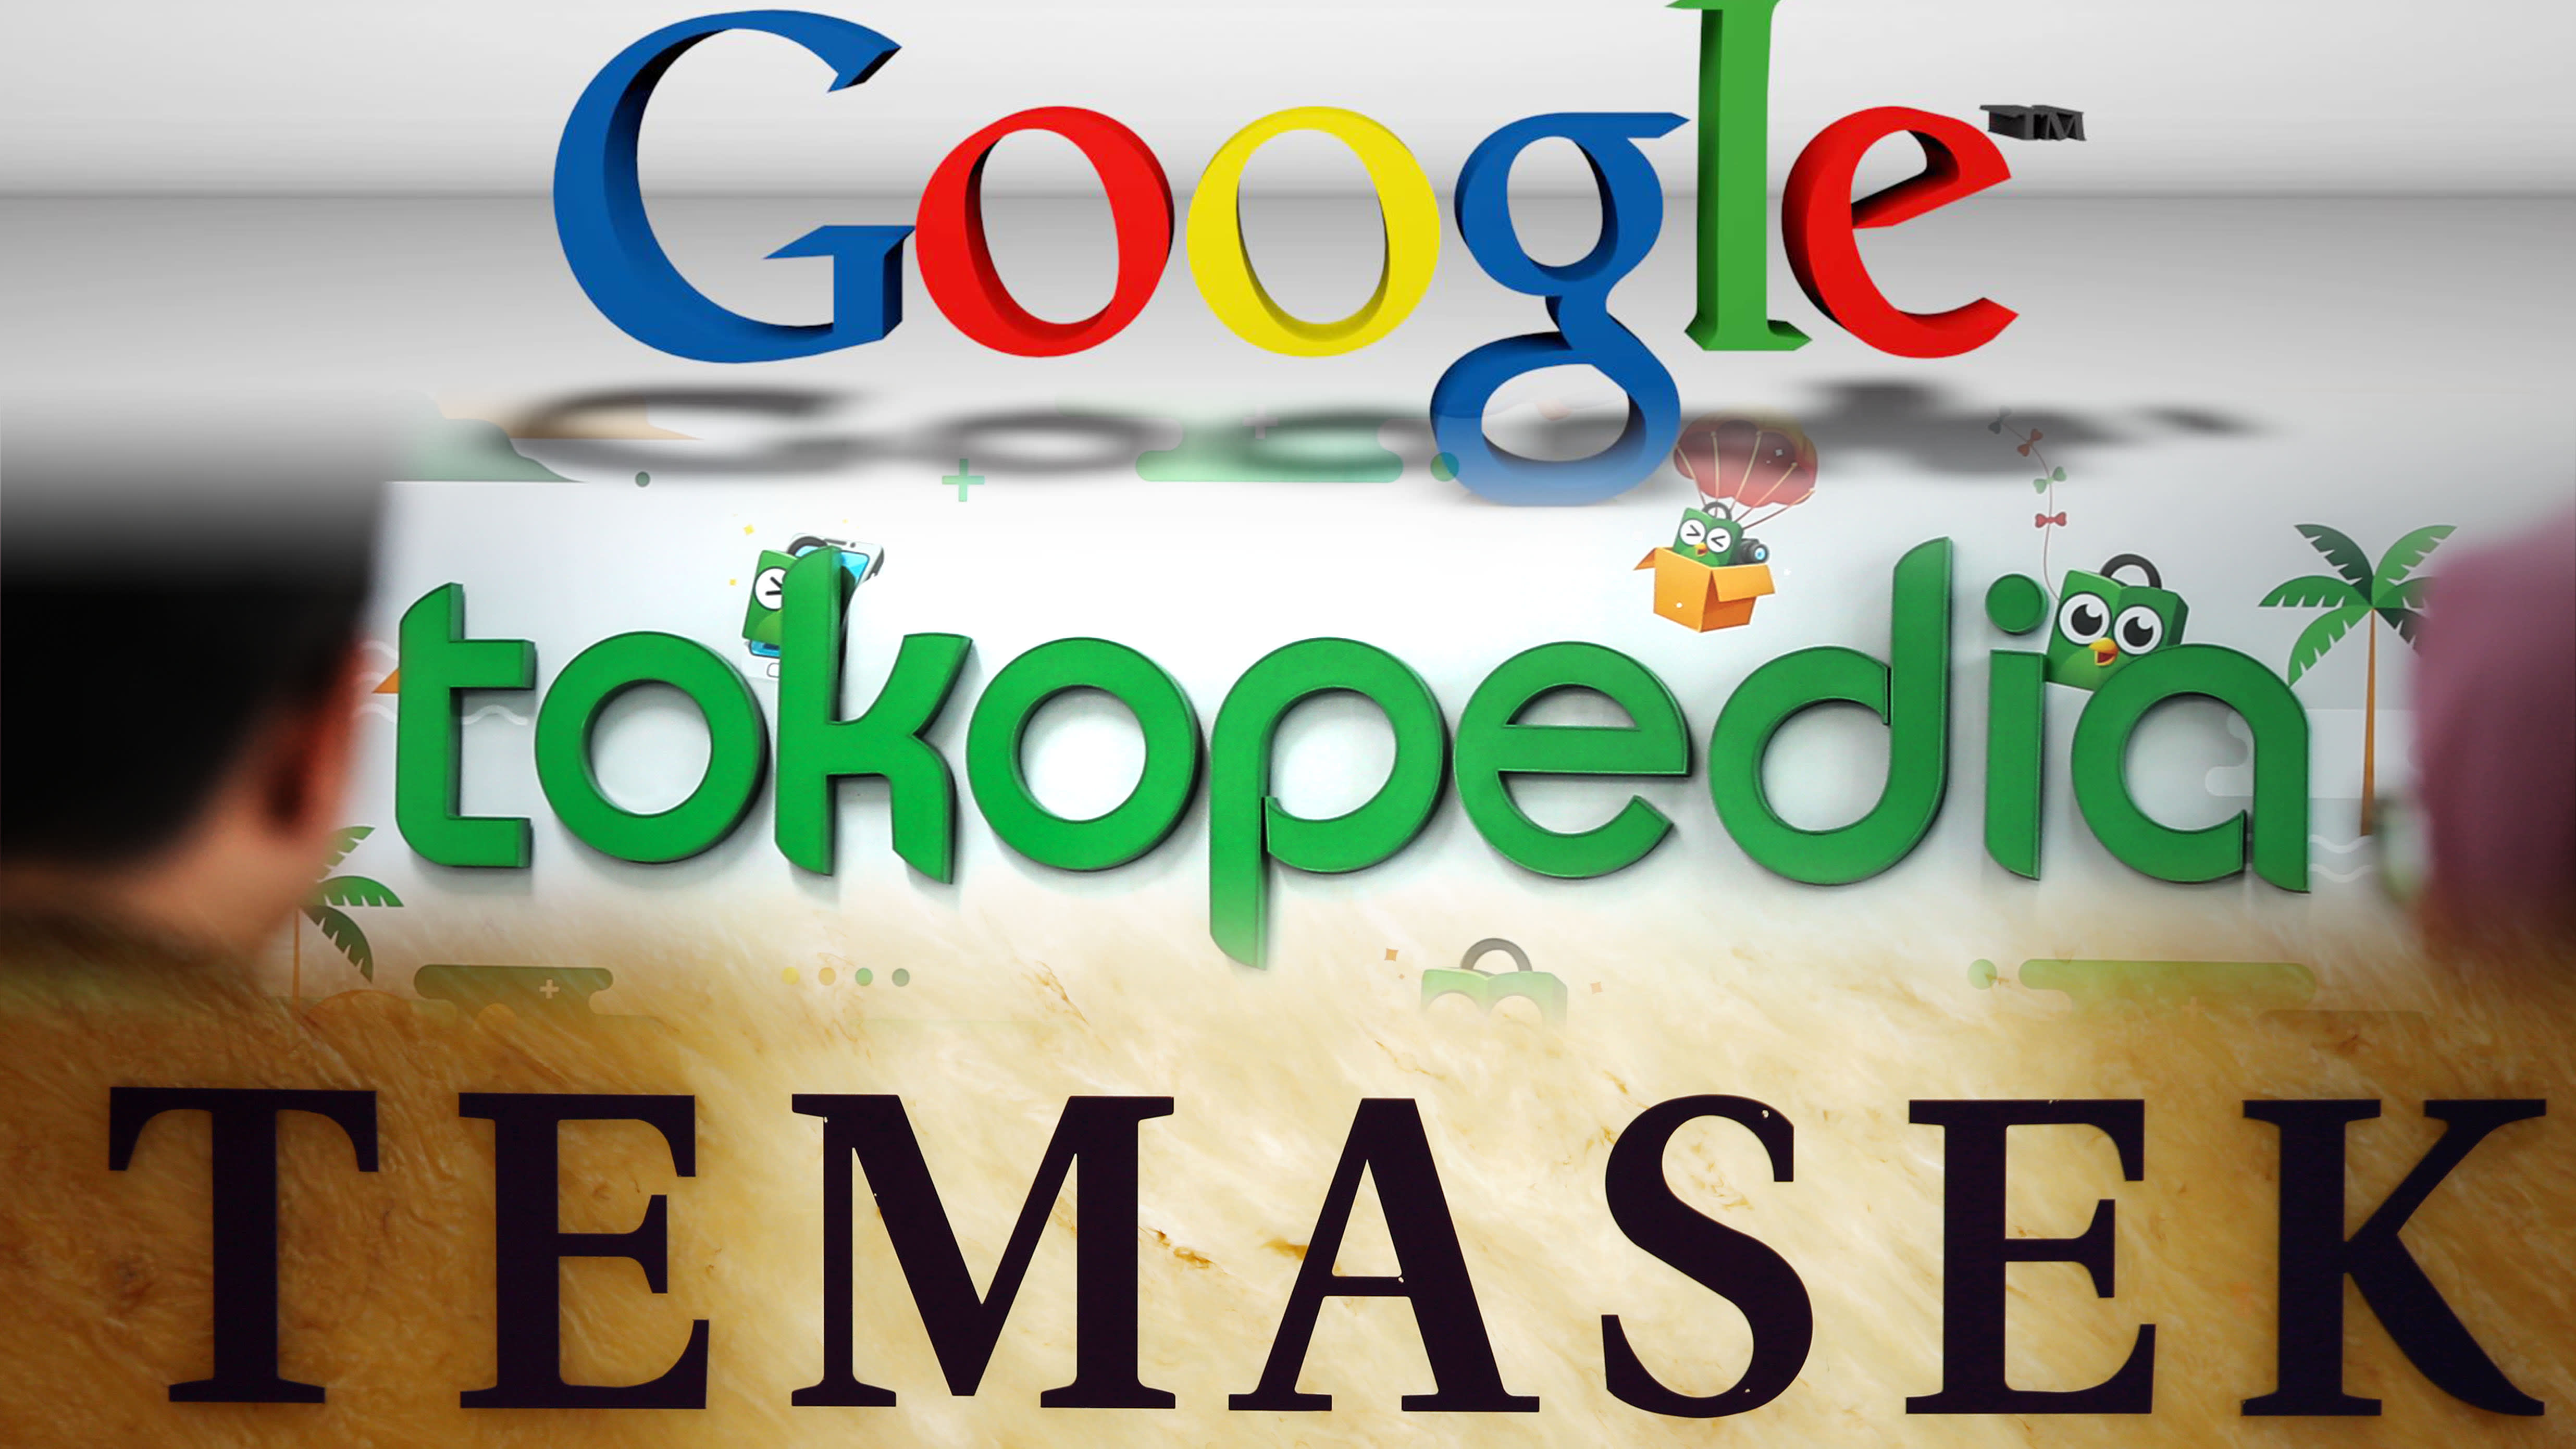 Google dan Temasek Kucurkan Dana Segar Miliaran Rupiah ke Tokopedia